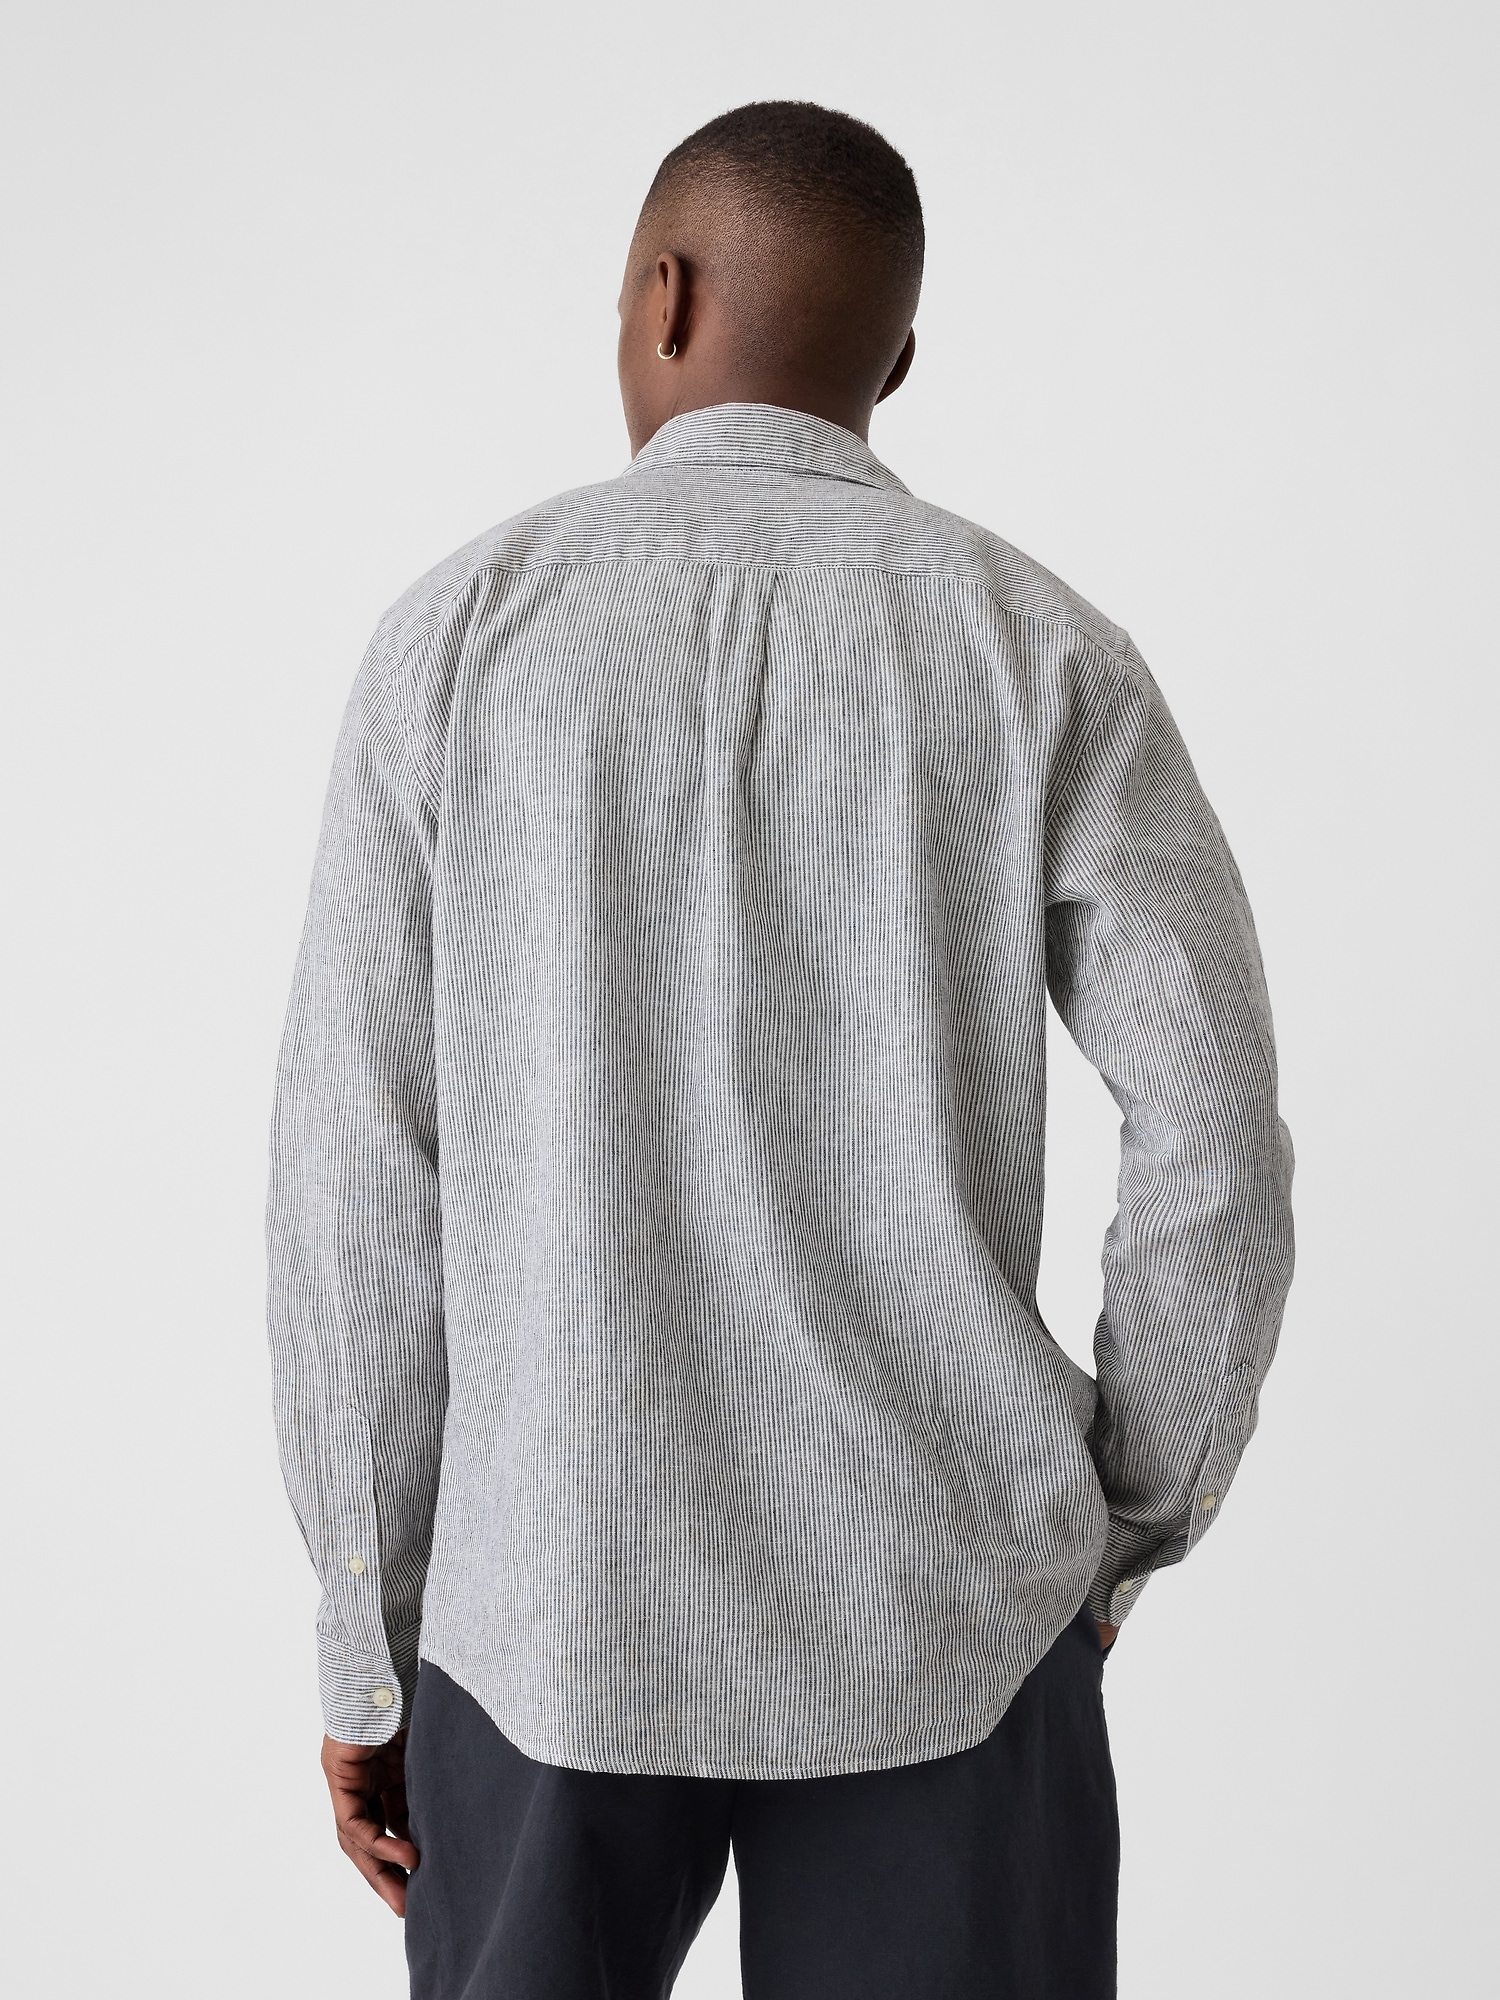 Linen-Blend Shirt in Standard Fit | Gap Factory